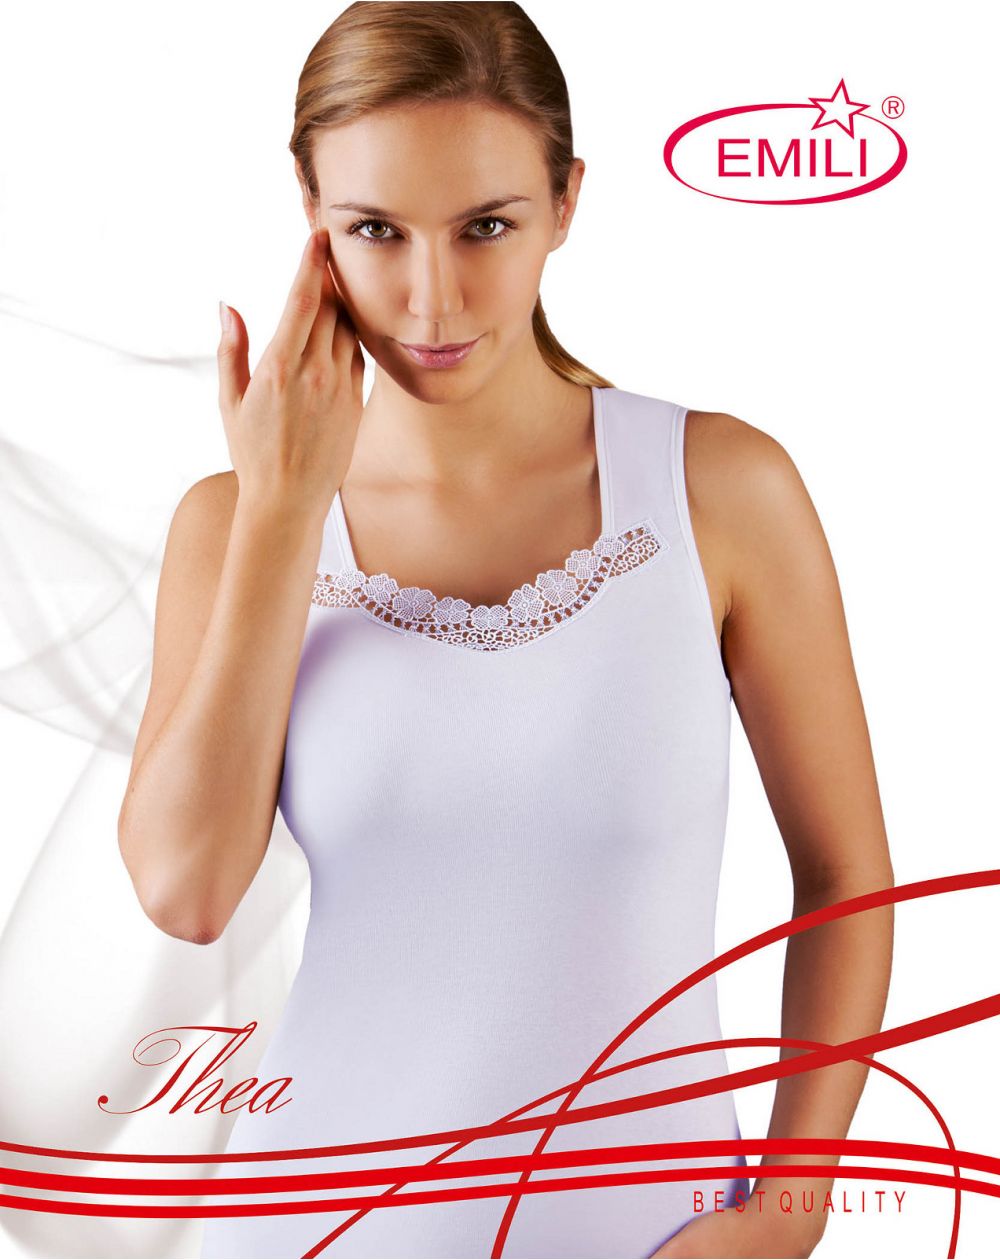 T-shirt Emila Thea S-XL